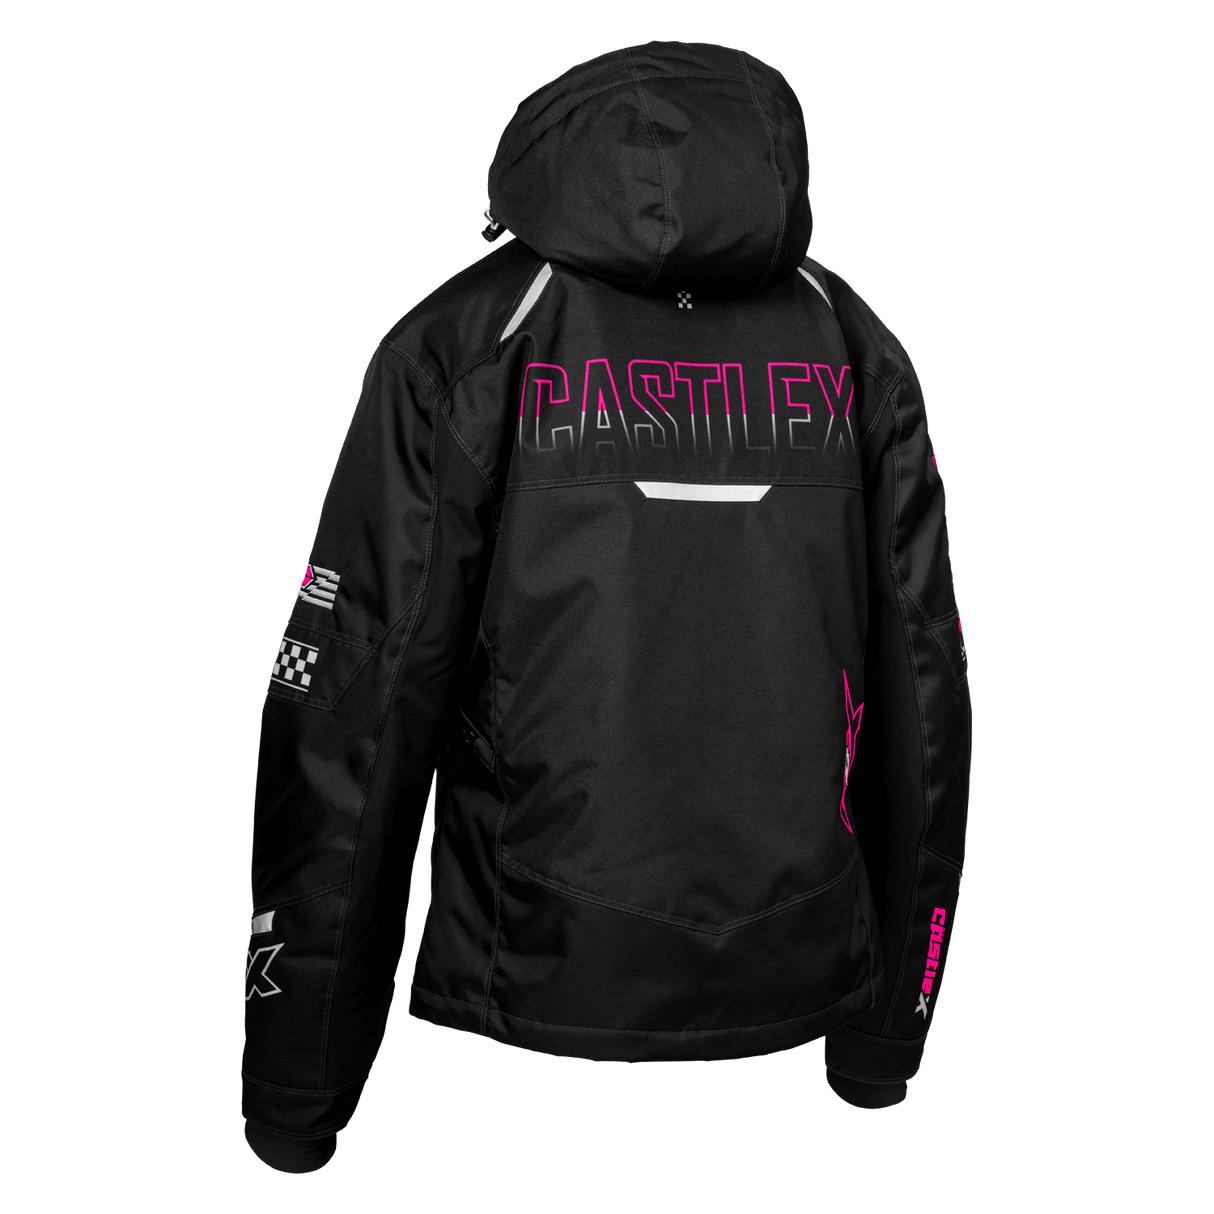 Castle X Women's Strike-G6 Jacket